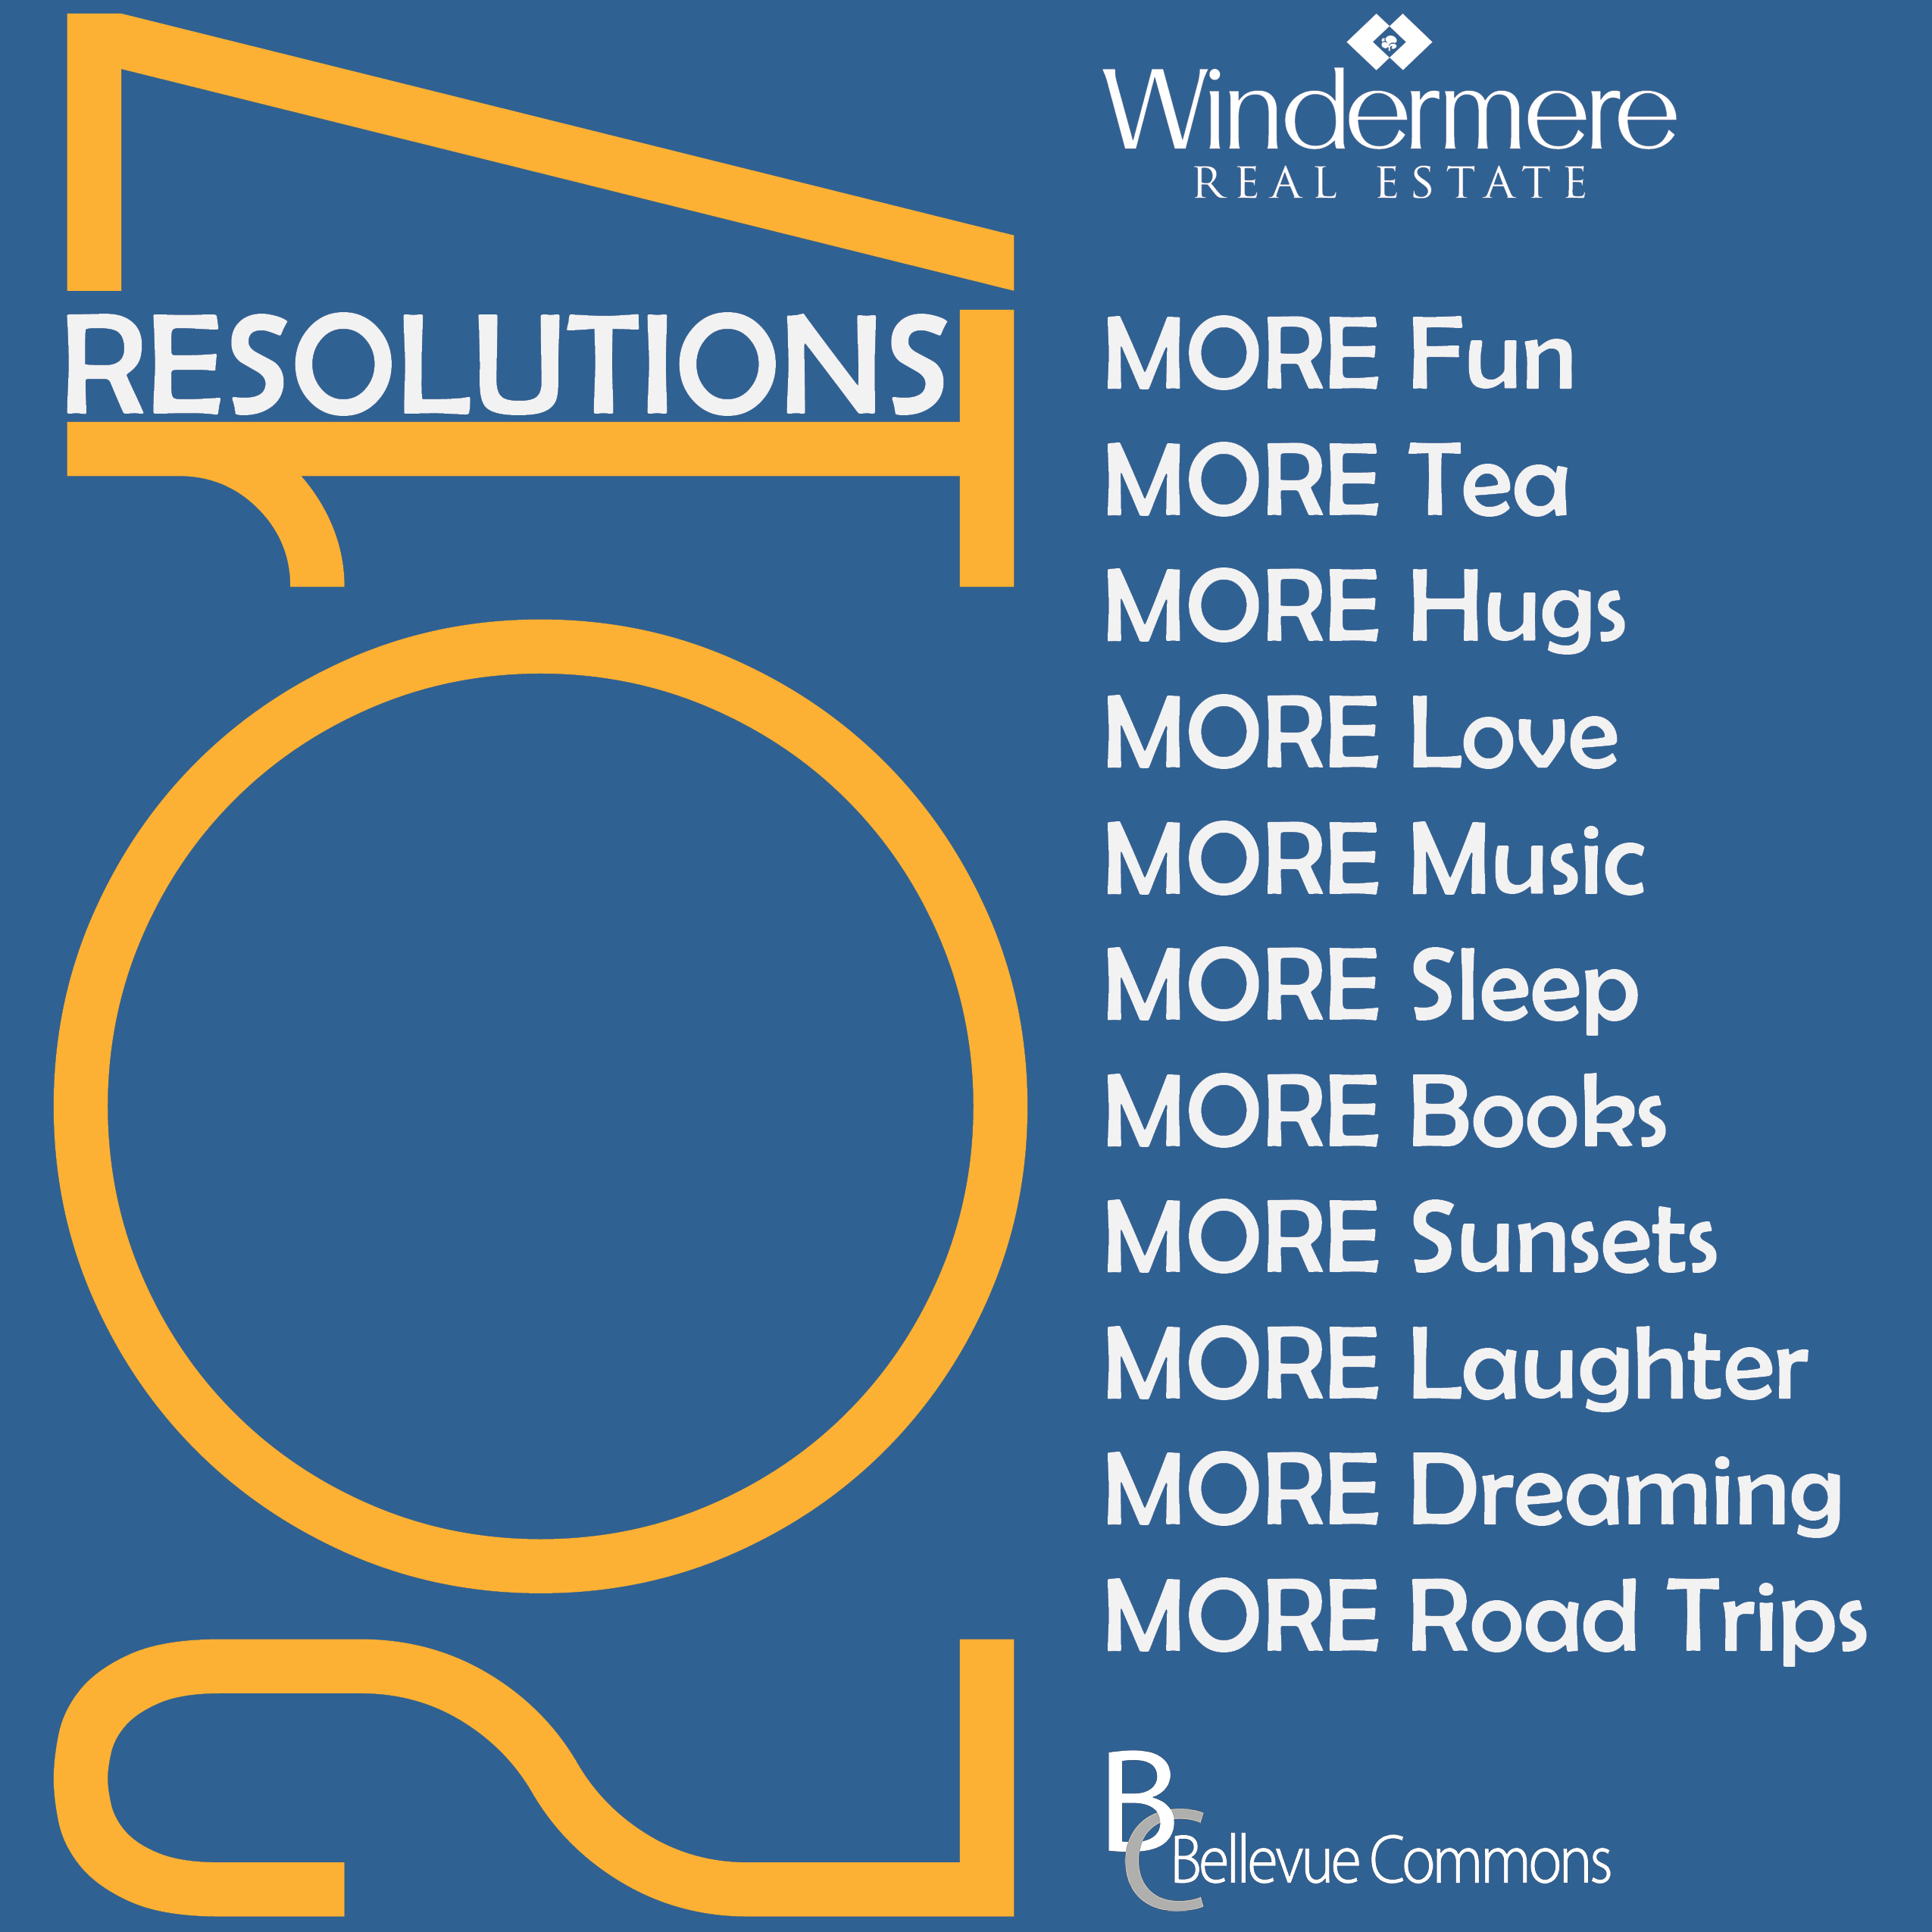 2017 resolutions